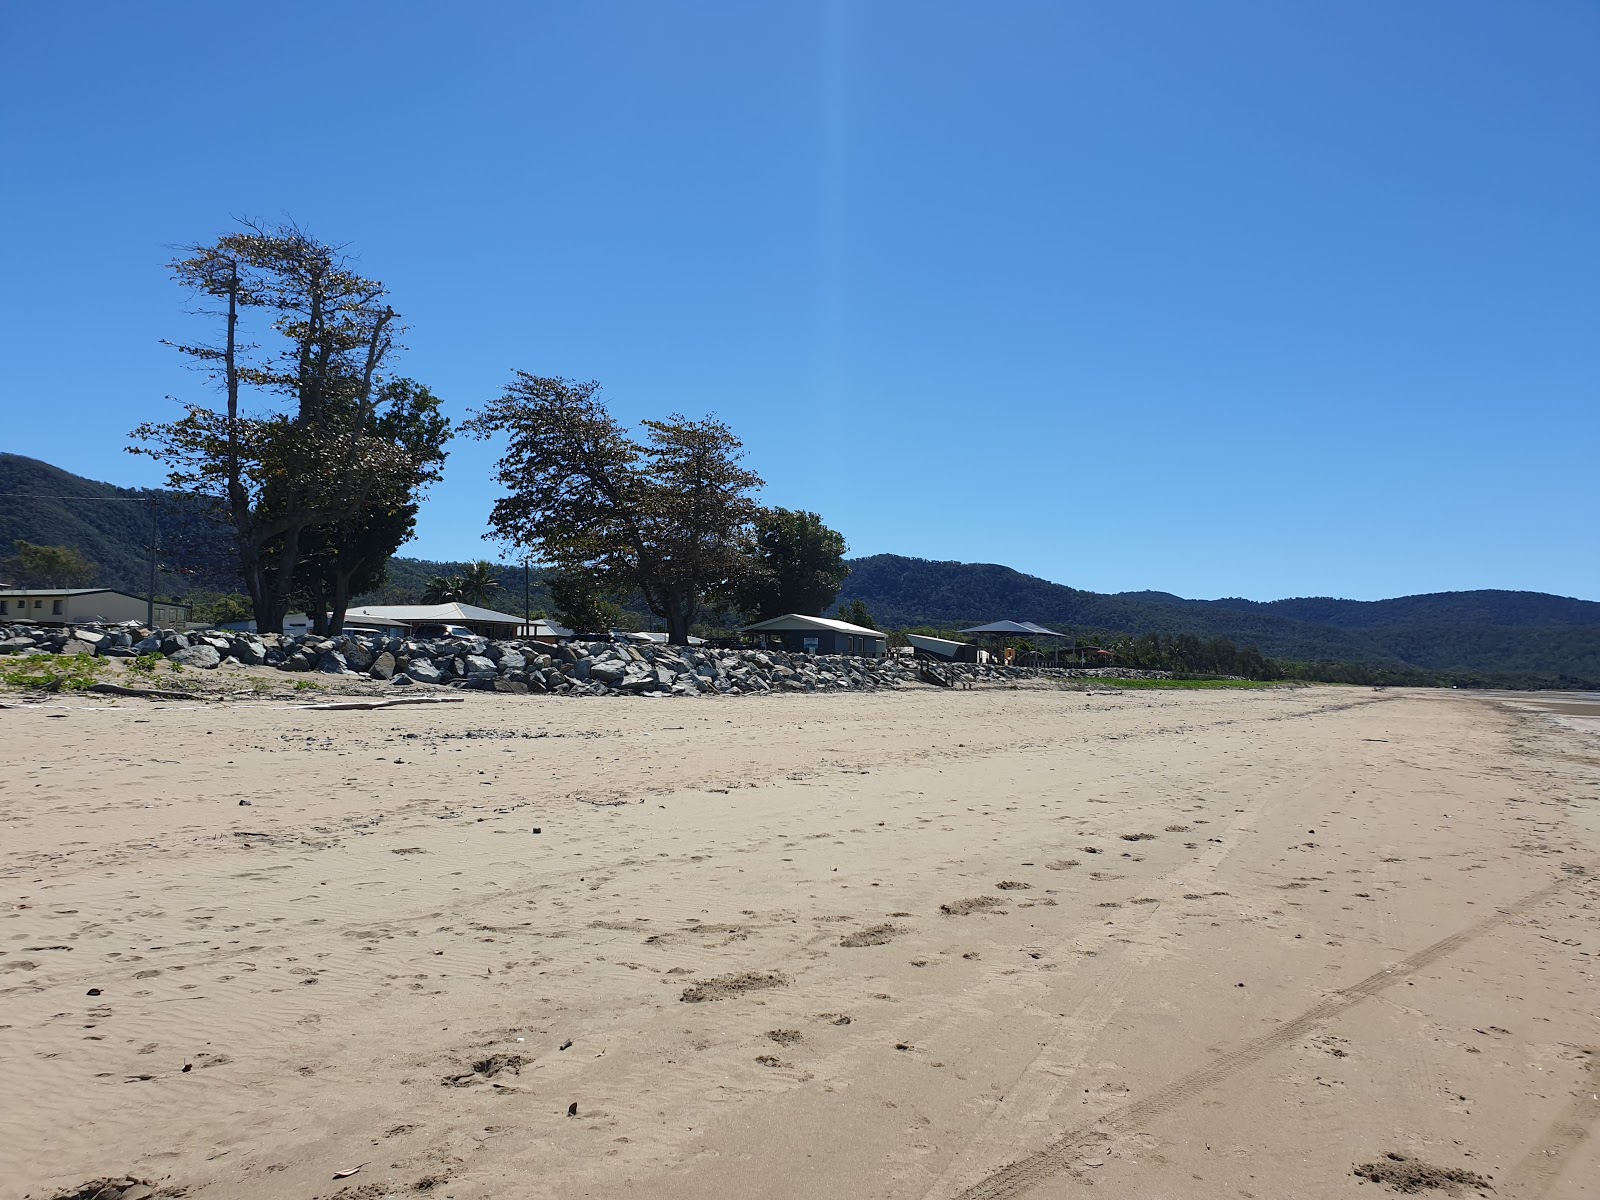 Zdjęcie Conway Beach - popularne miejsce wśród znawców relaksu